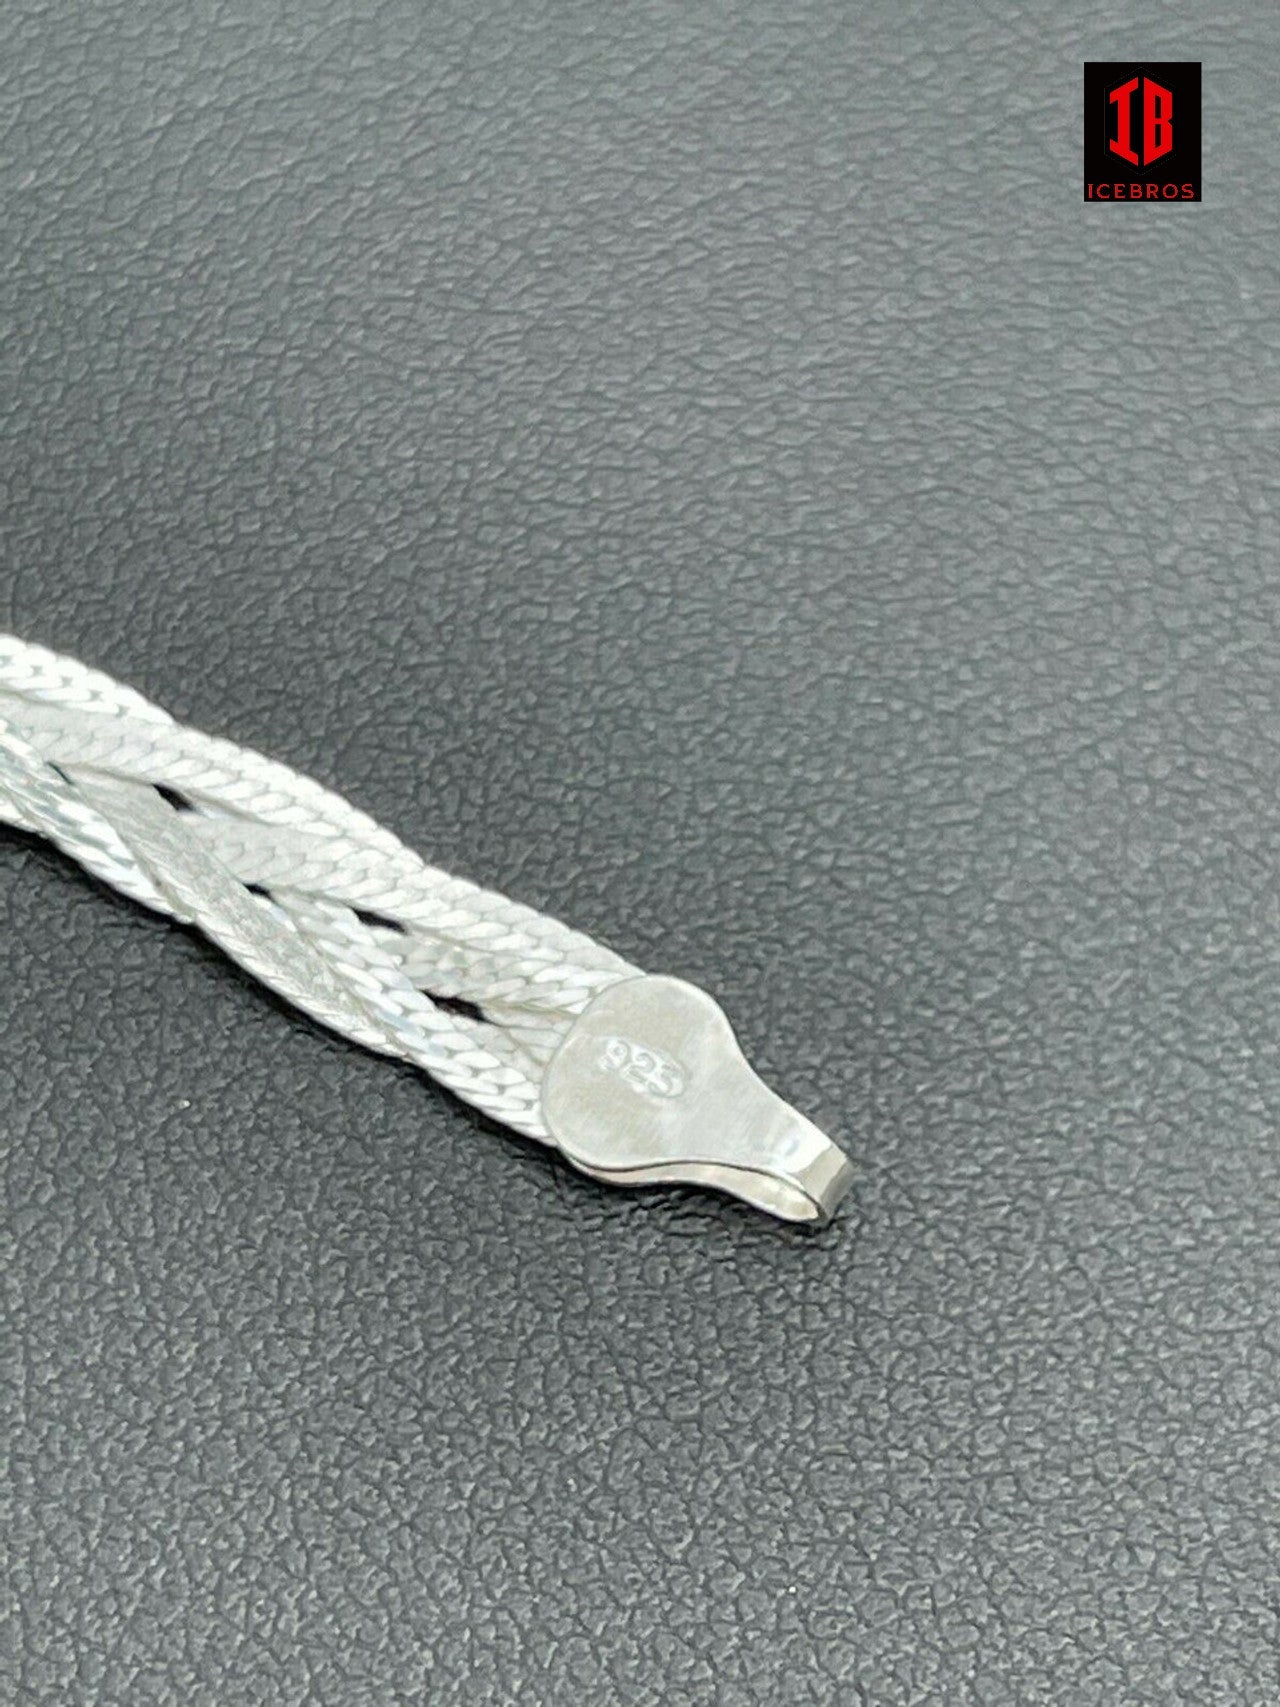 Solid 925 Sterling Silver Ladies 6mm Twisted Braided Herringbone Bracelet ITALY